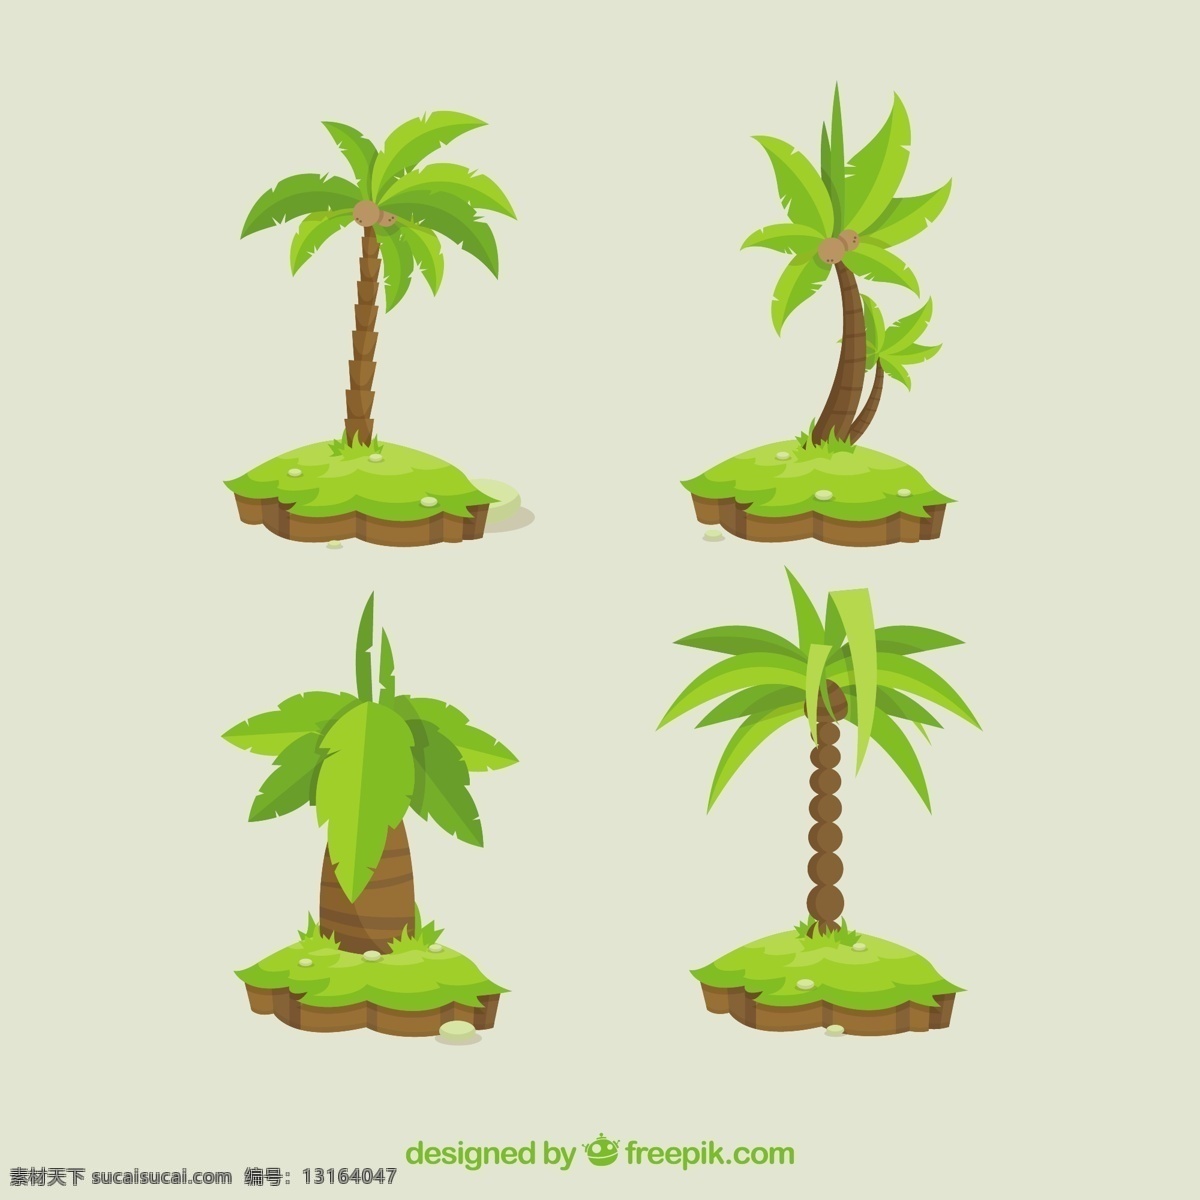 平面设计 中 四棵 棕榈树 树 夏天 树叶 自然 热带 平原 植物 树木 环境 棕榈叶 天堂 树干 套装 四